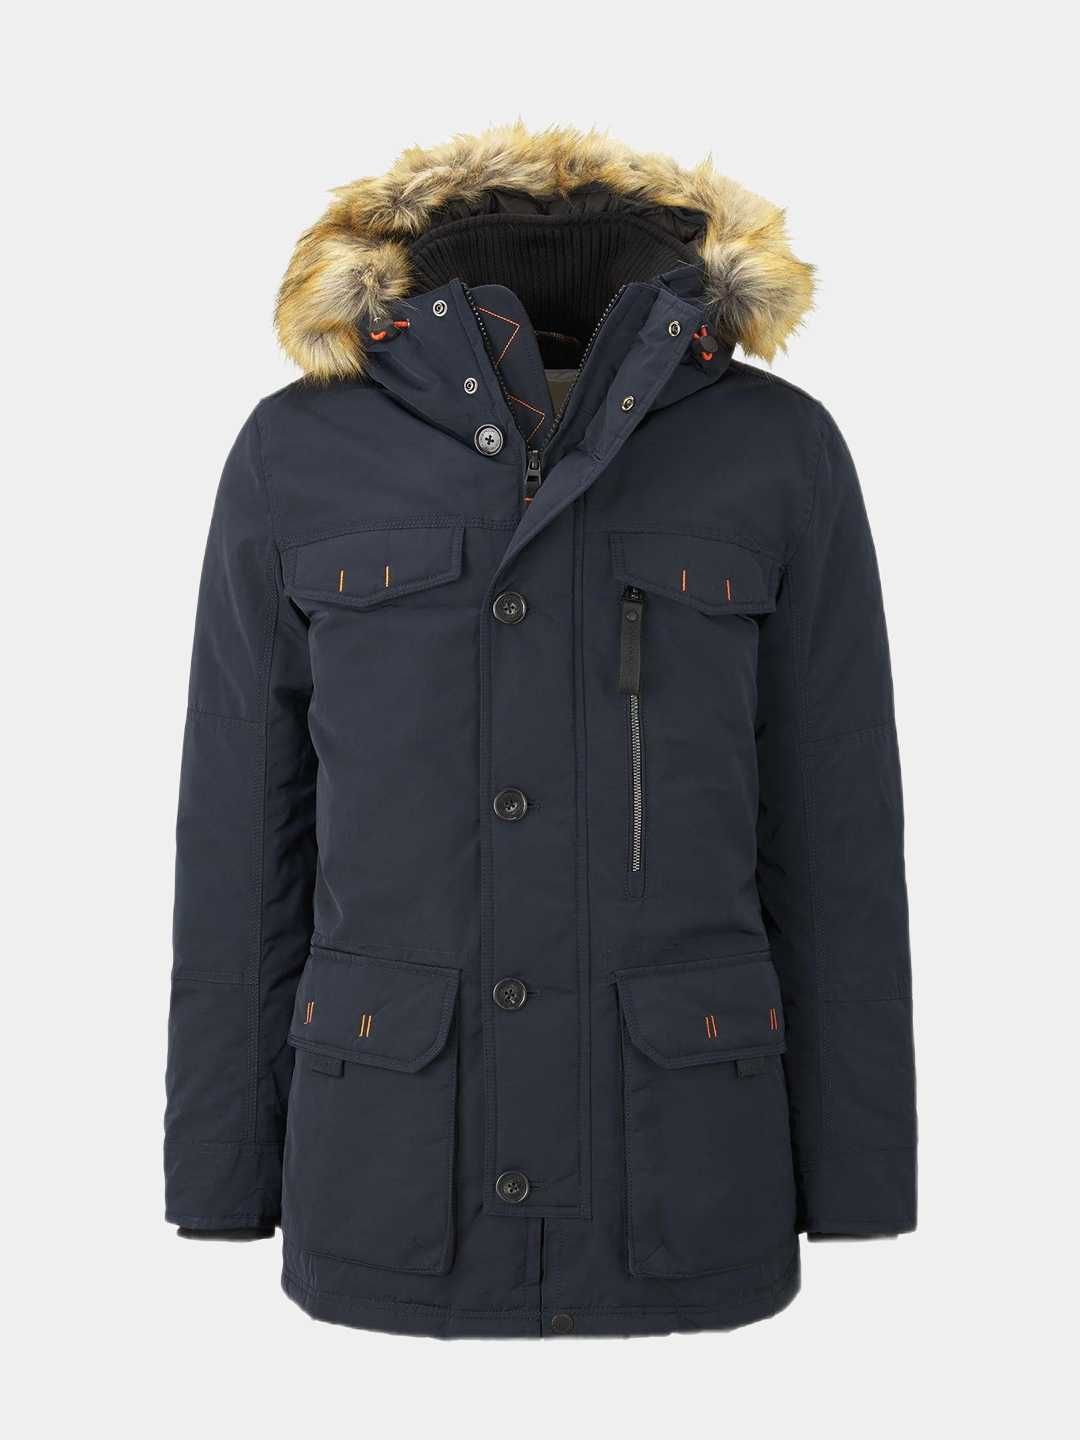 Мужская зимняя куртка аляска Tom Tailor Sorona Aura [от М до 3XL]